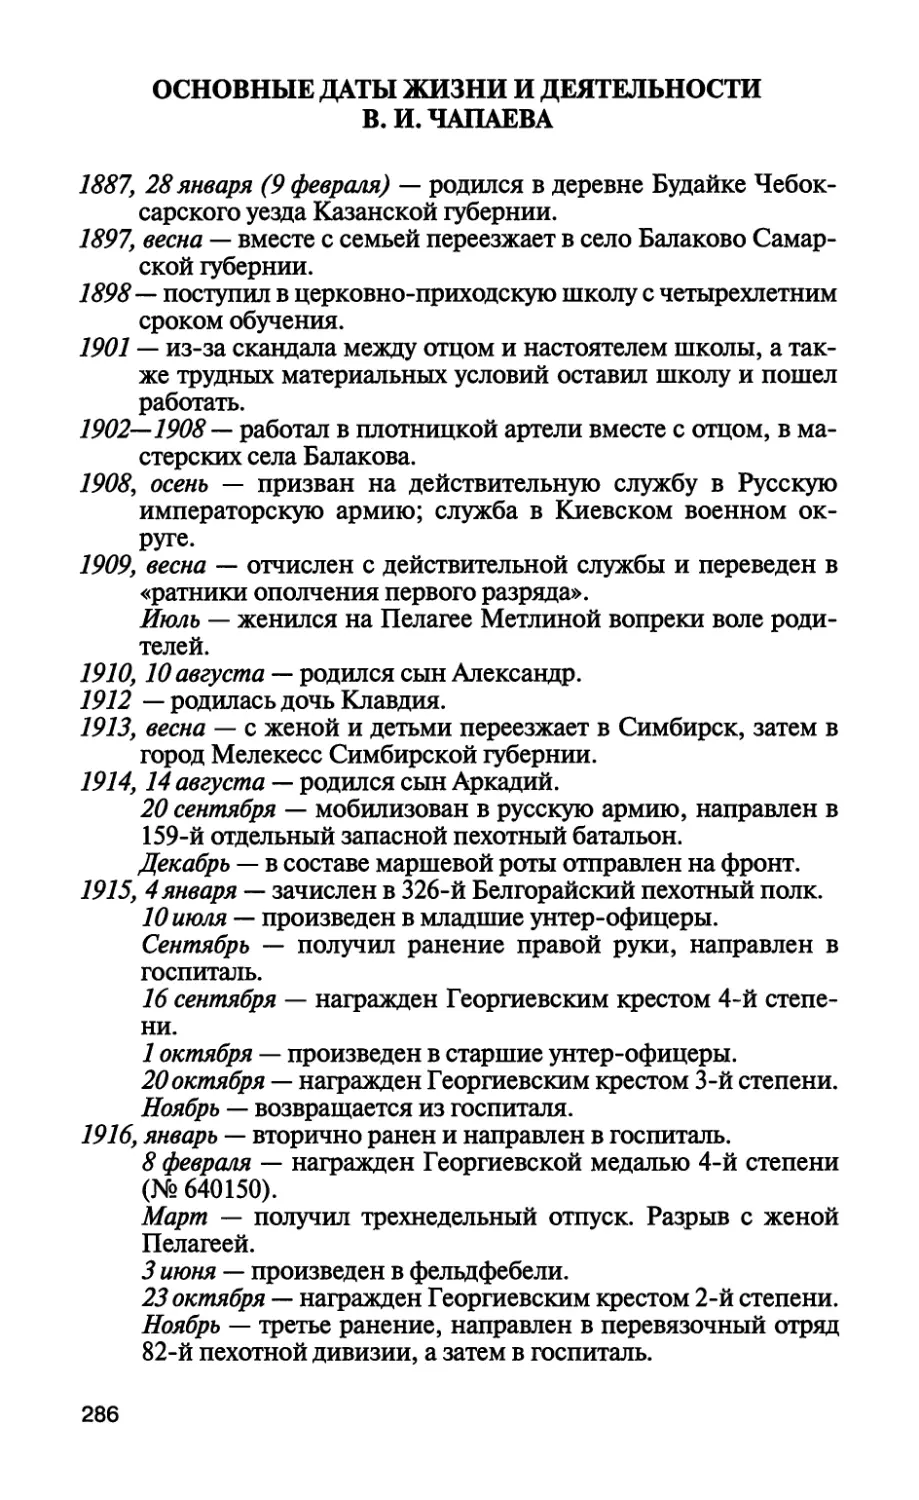 Основные даты жизни и деятельности В. И. Чапаева